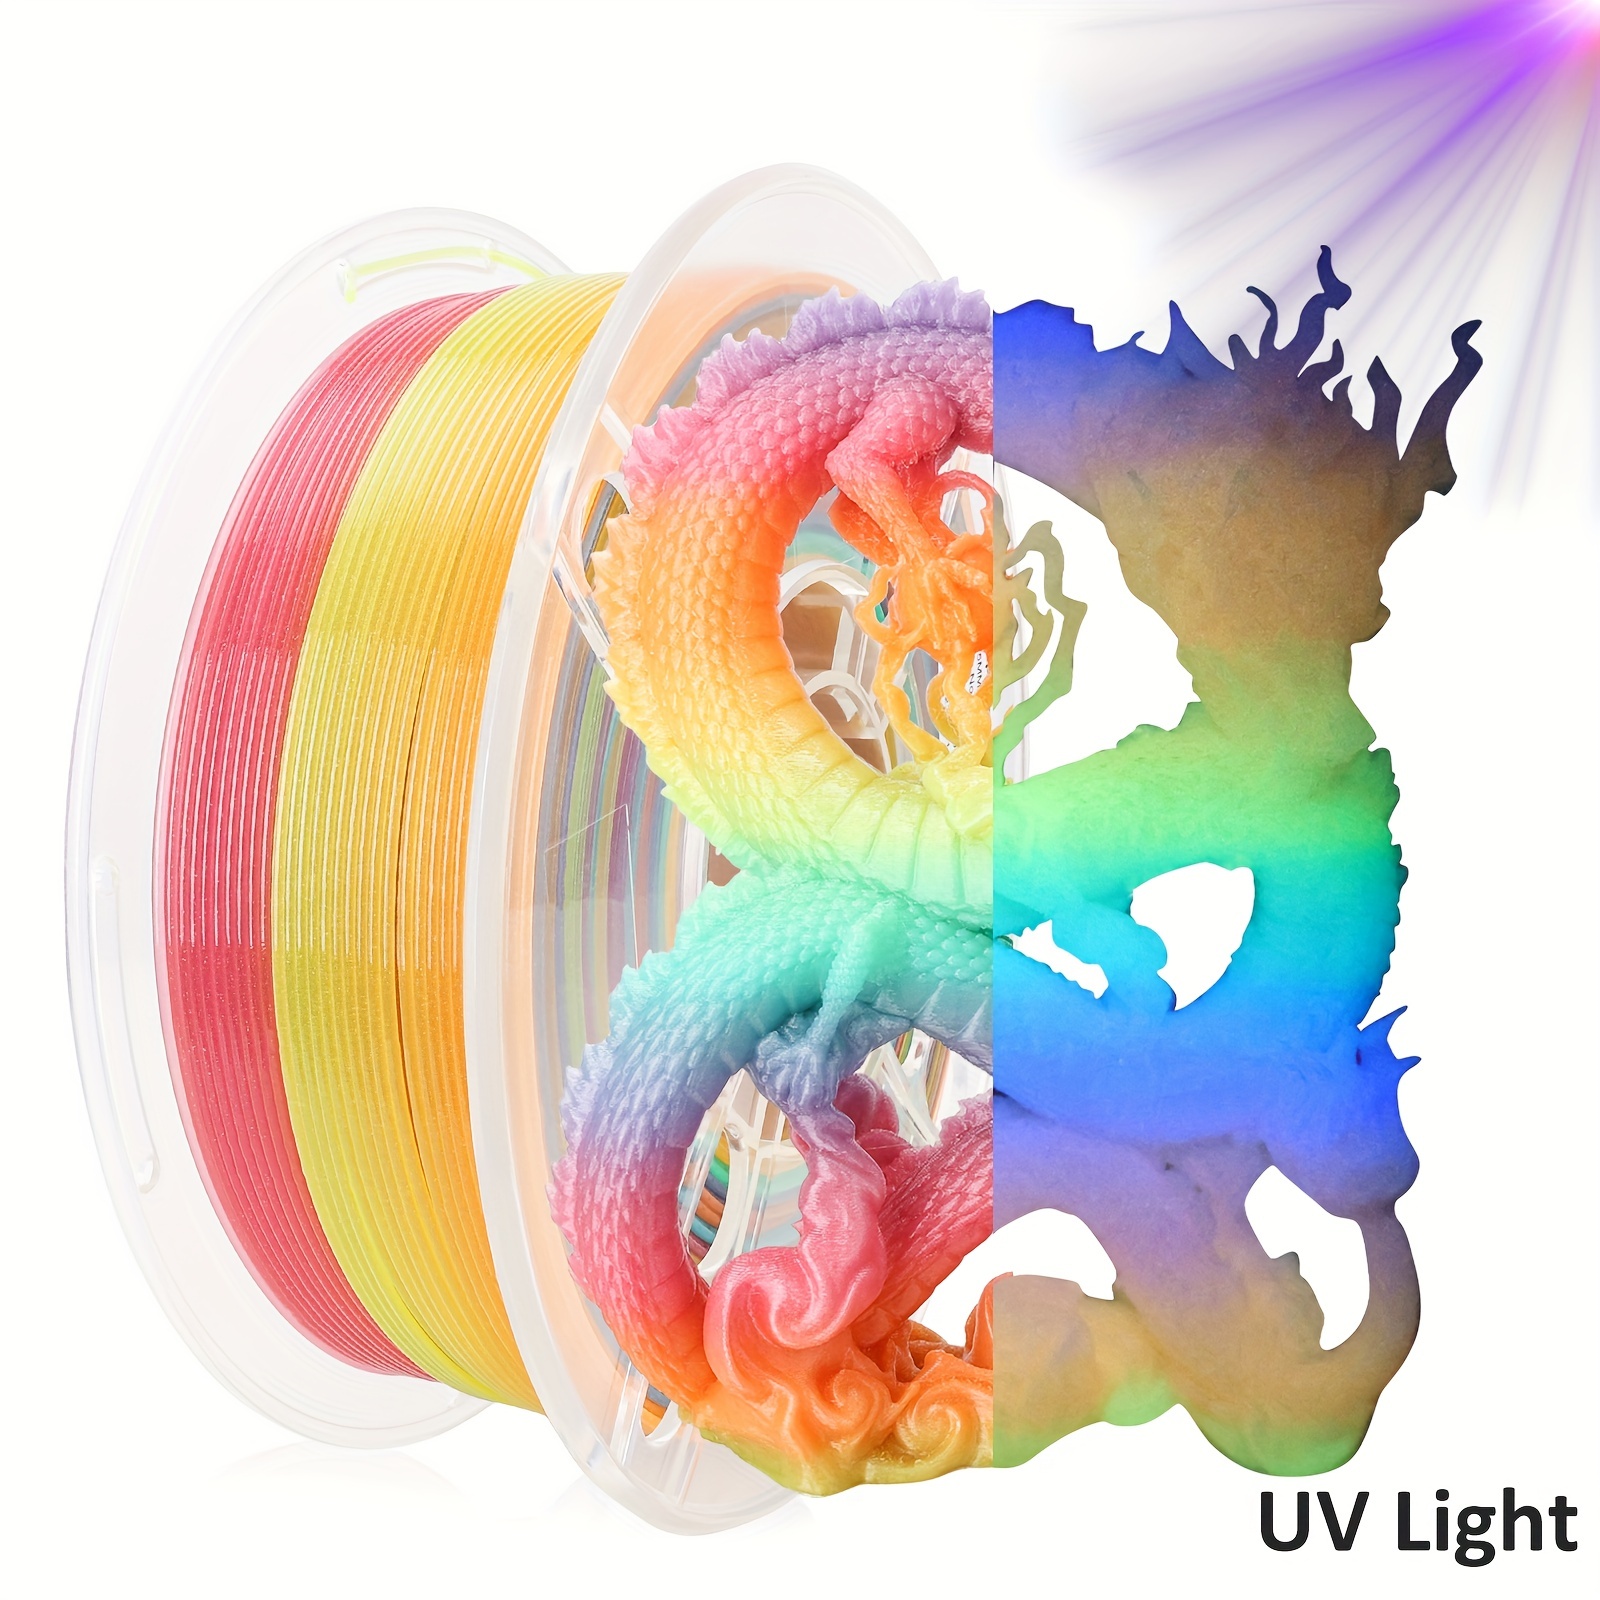 SunLu PLA Filament  1.75mm, Rainbow, 1kg